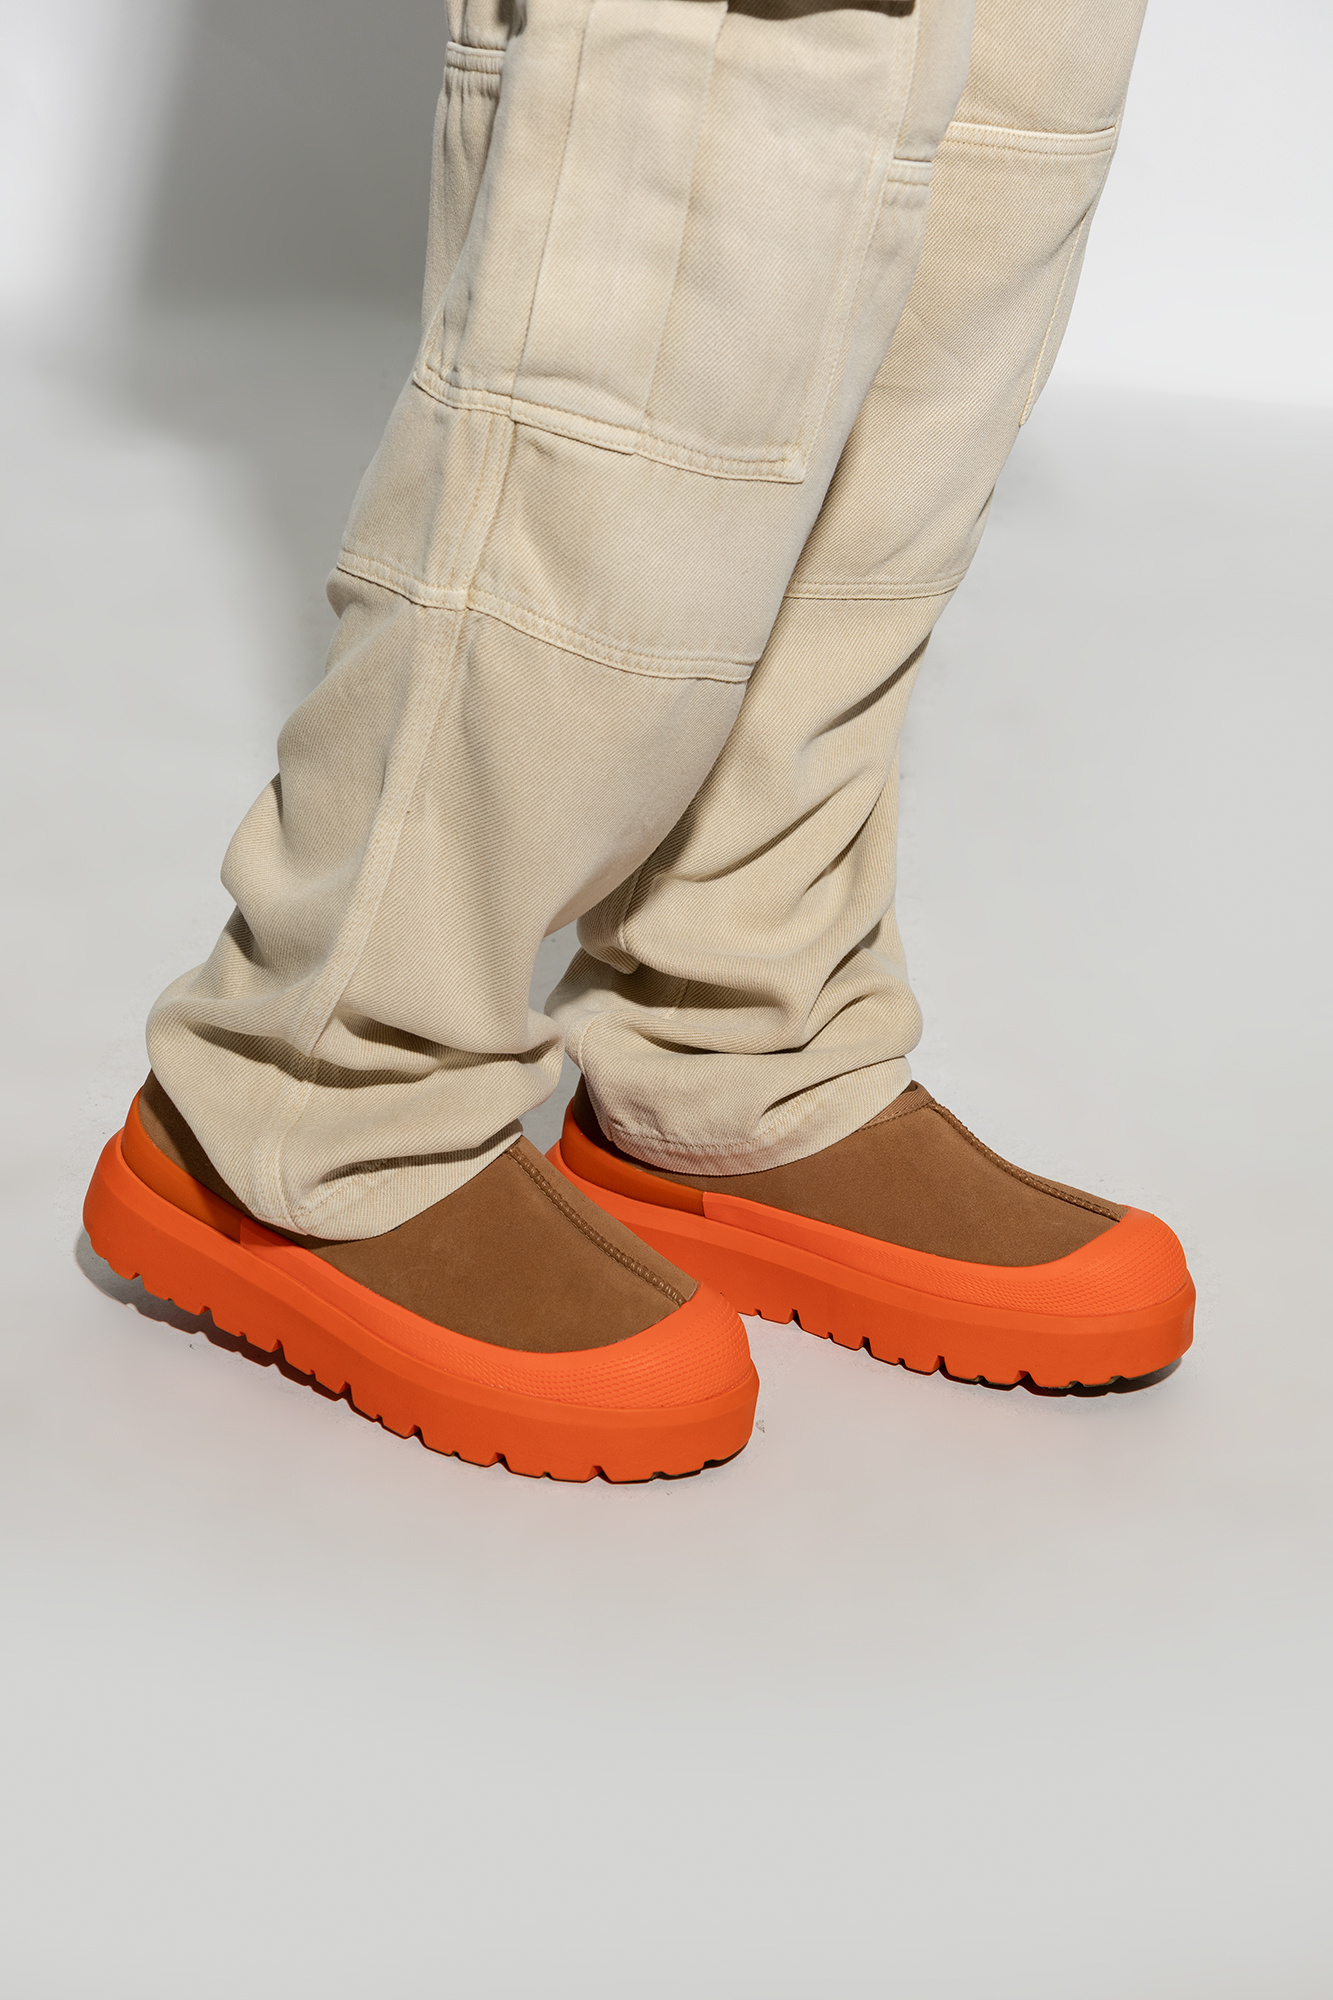 Pre-Order LV Designer Ugg Inspired Boots